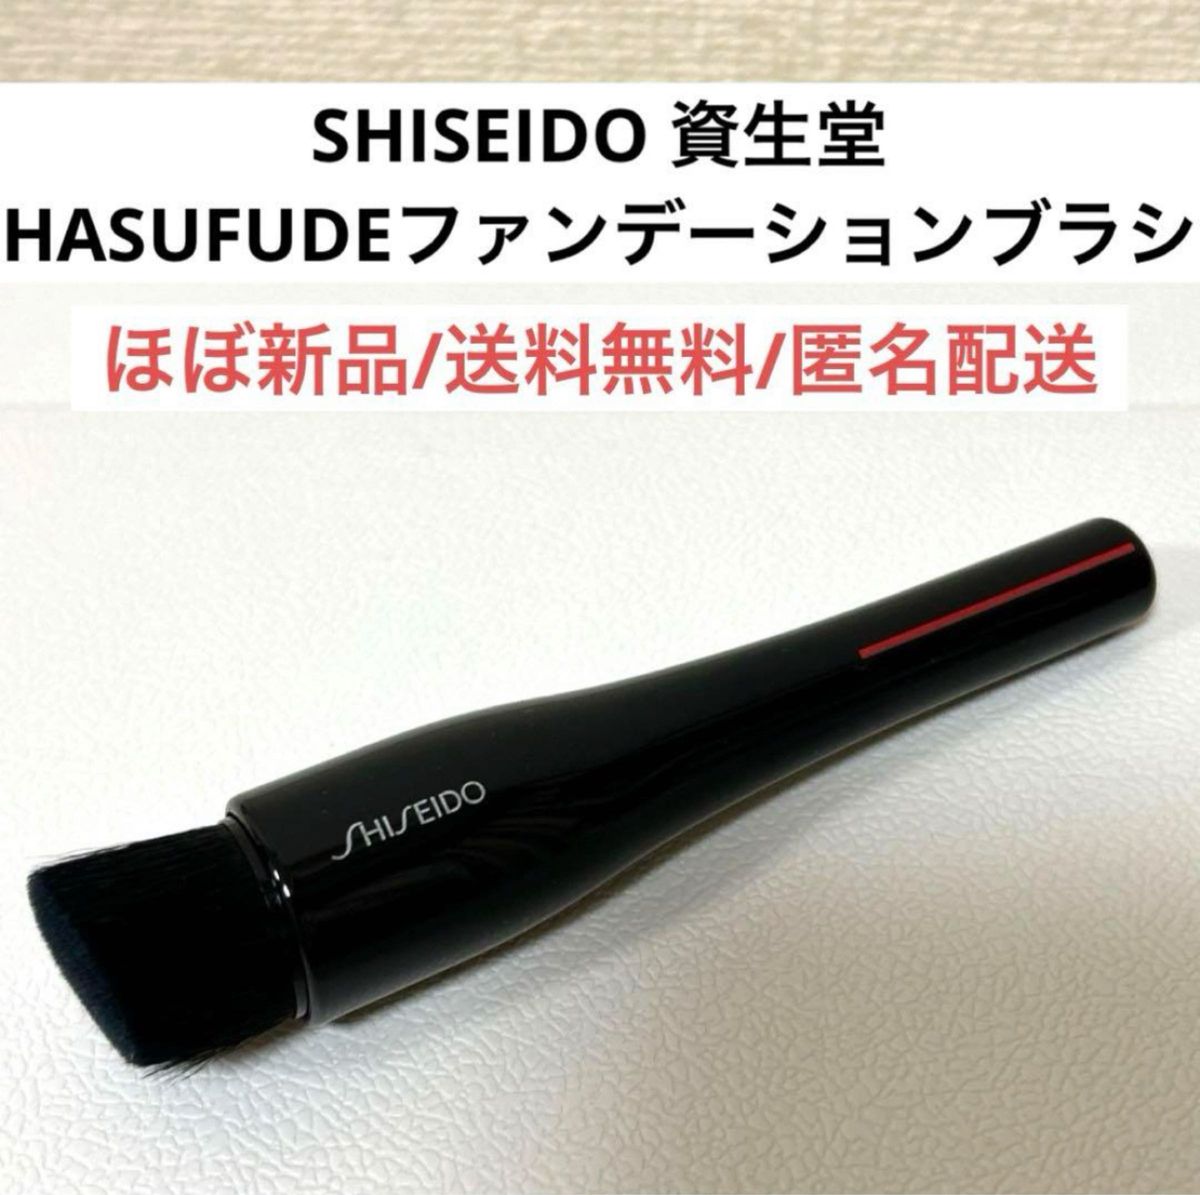 ほぼ新品SHISEIDO資生堂HASUFUDEファンデーションブラシ化粧筆コスメ